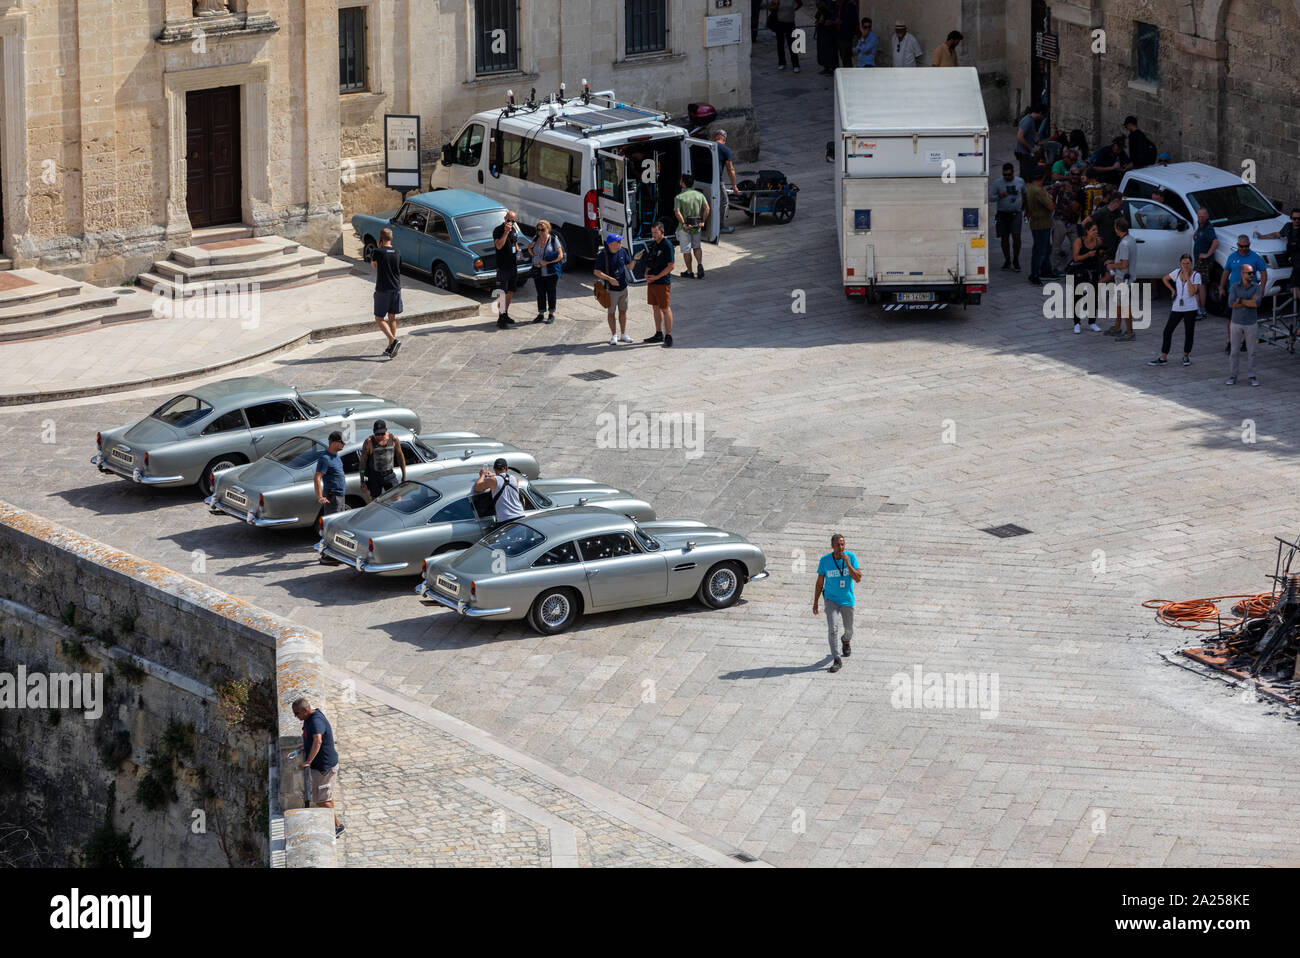 Matera, Italien - September 15, 2019: Bond 25, Aston Martin DB 5 Autos bereit, die Szenen aus dem Film "keine Zeit" in Sassi, Matera, Italien zu sterben, um zu schießen. Stockfoto